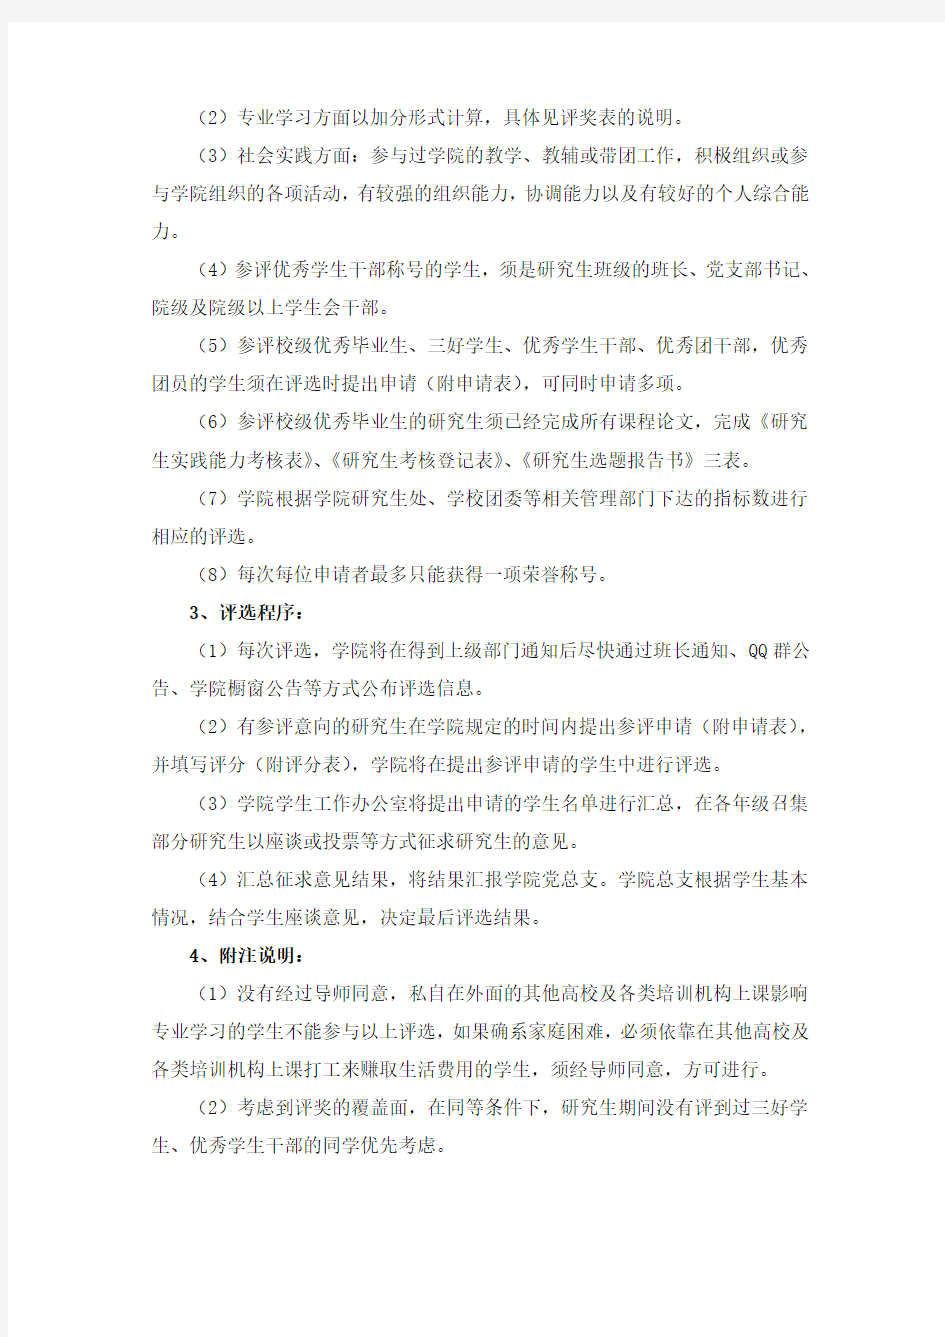 第七条三好学生评奖条件及评选比例-上海师范大学对外汉语学院